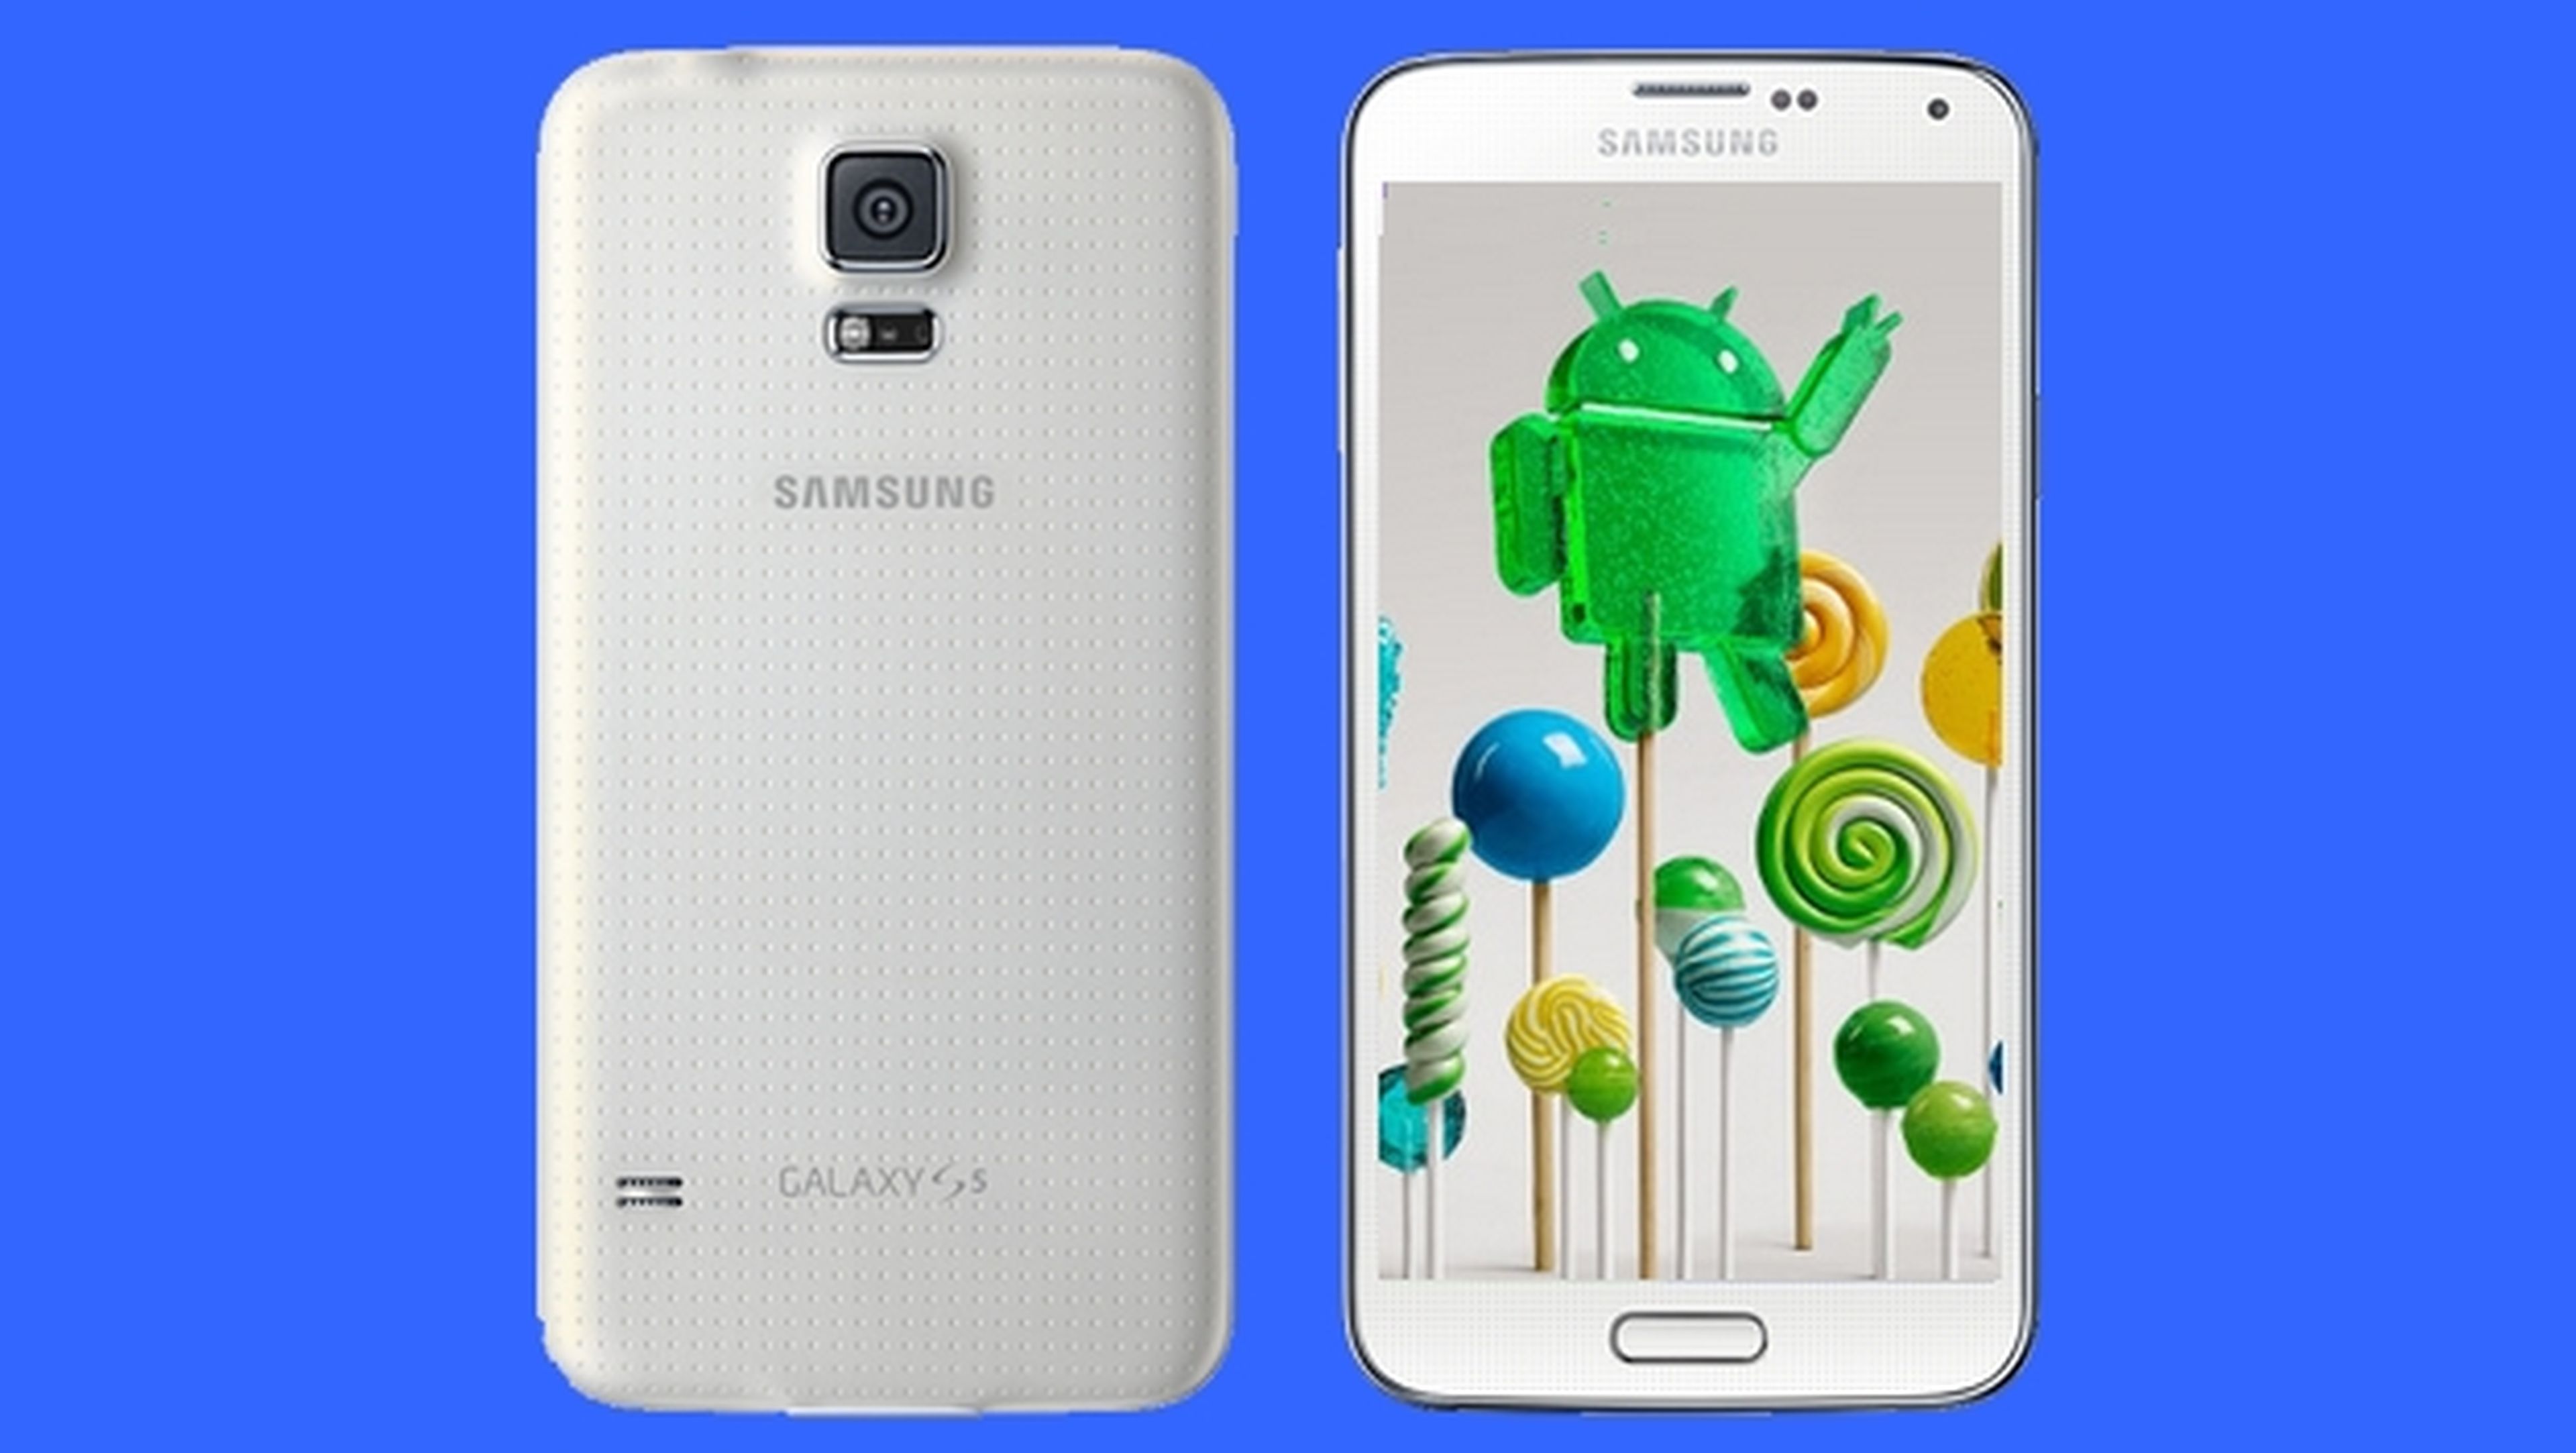 Ya puedes descargar Android 5.0 Lollipop para el Samsung Galaxy S5 en España.